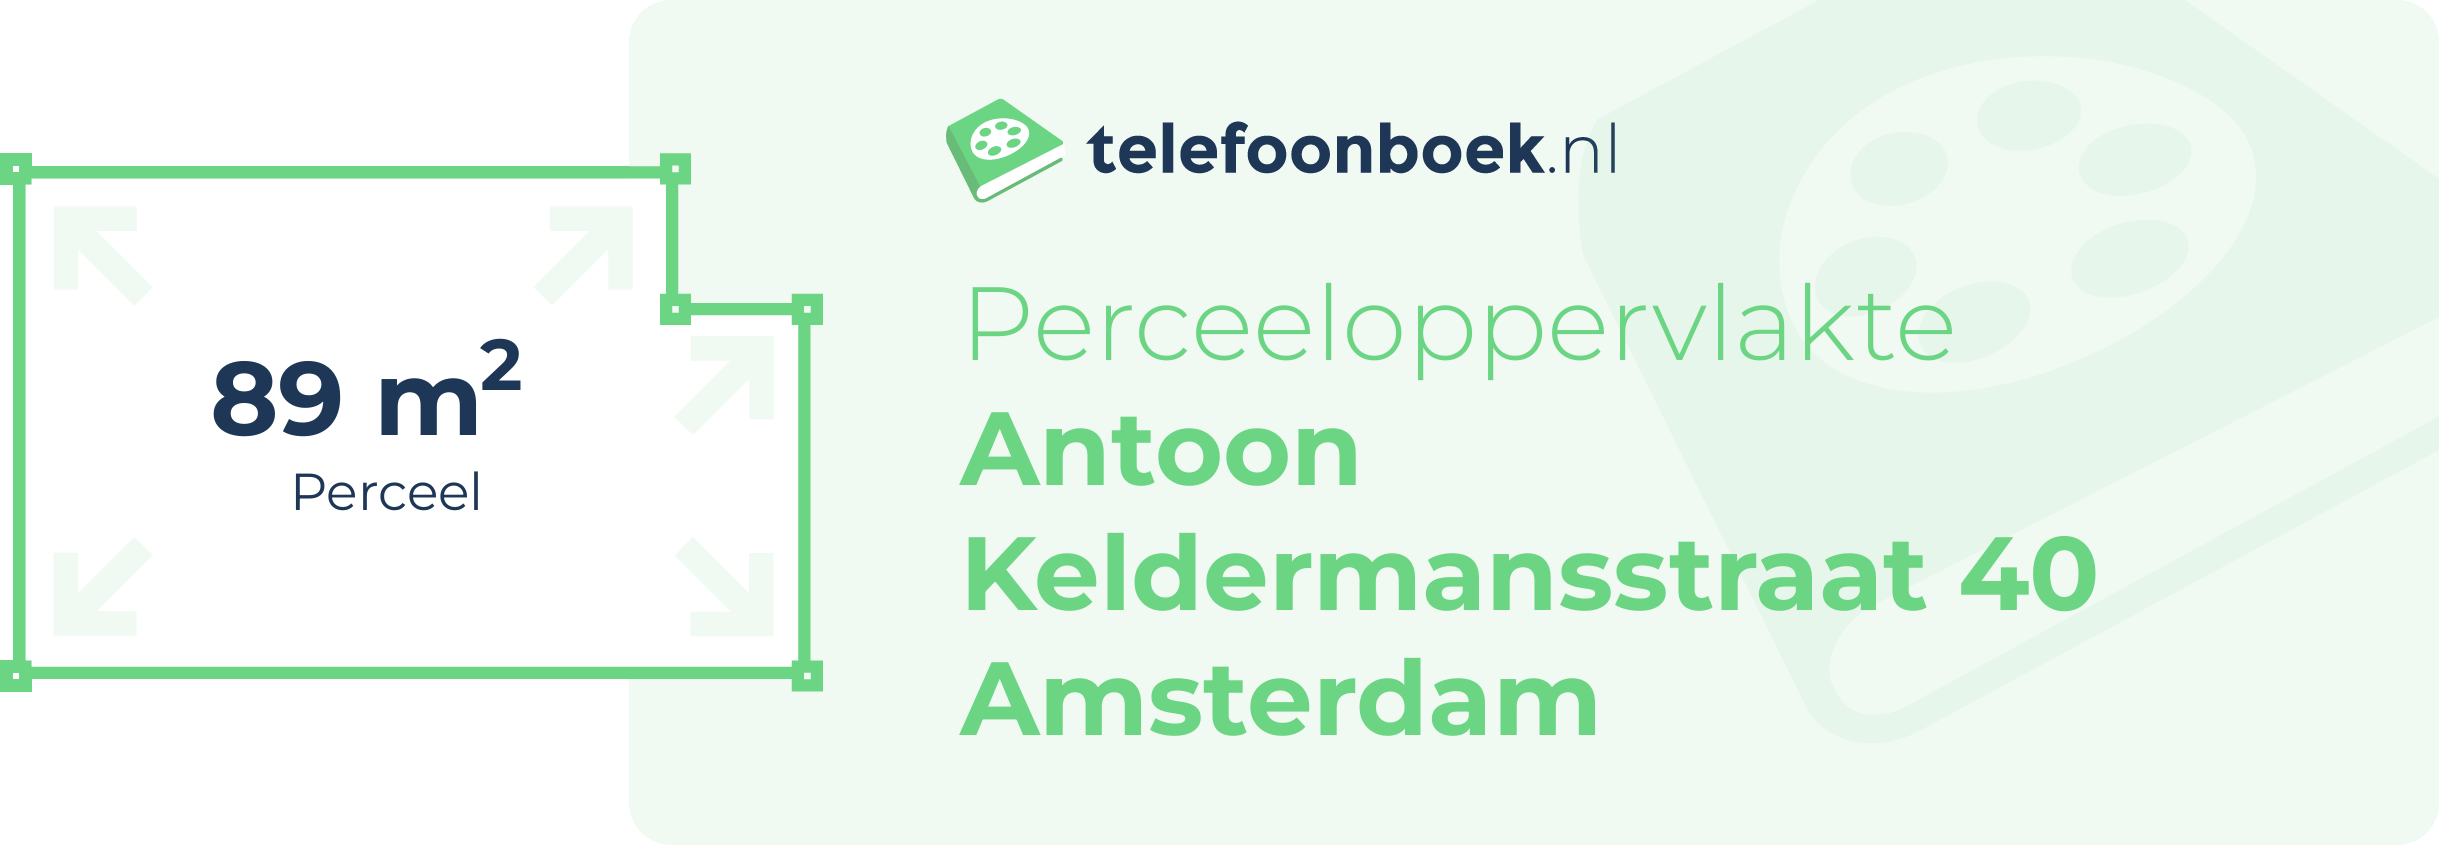 Perceeloppervlakte Antoon Keldermansstraat 40 Amsterdam